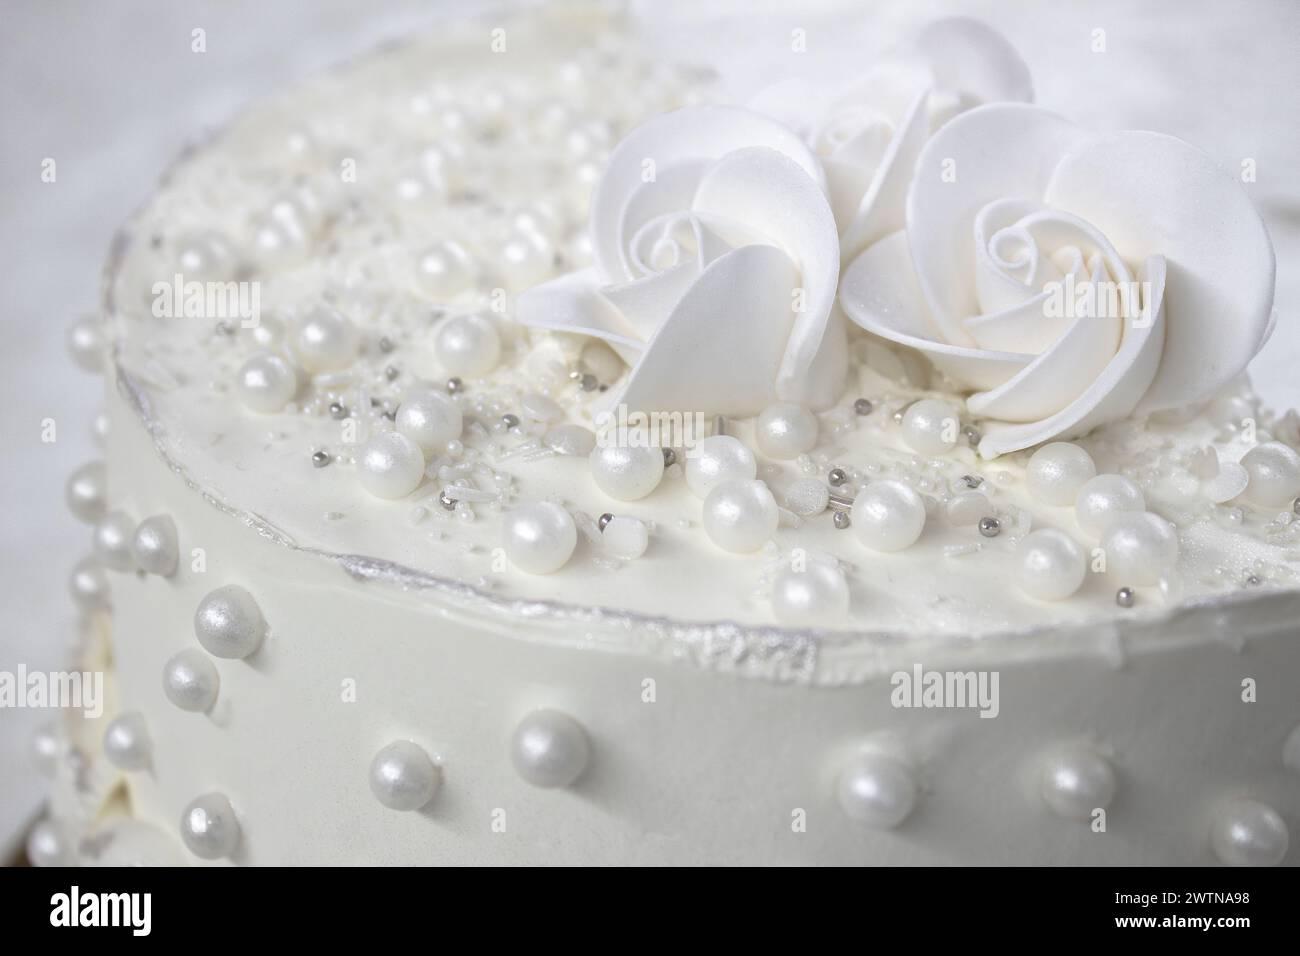 Weißer Partykuchen mit weißer Glasur und Perlen, Kuchendesign. Handgemachter Kuchen für einen besonderen feierlichen Anlass. Besondere Details. Stockfoto